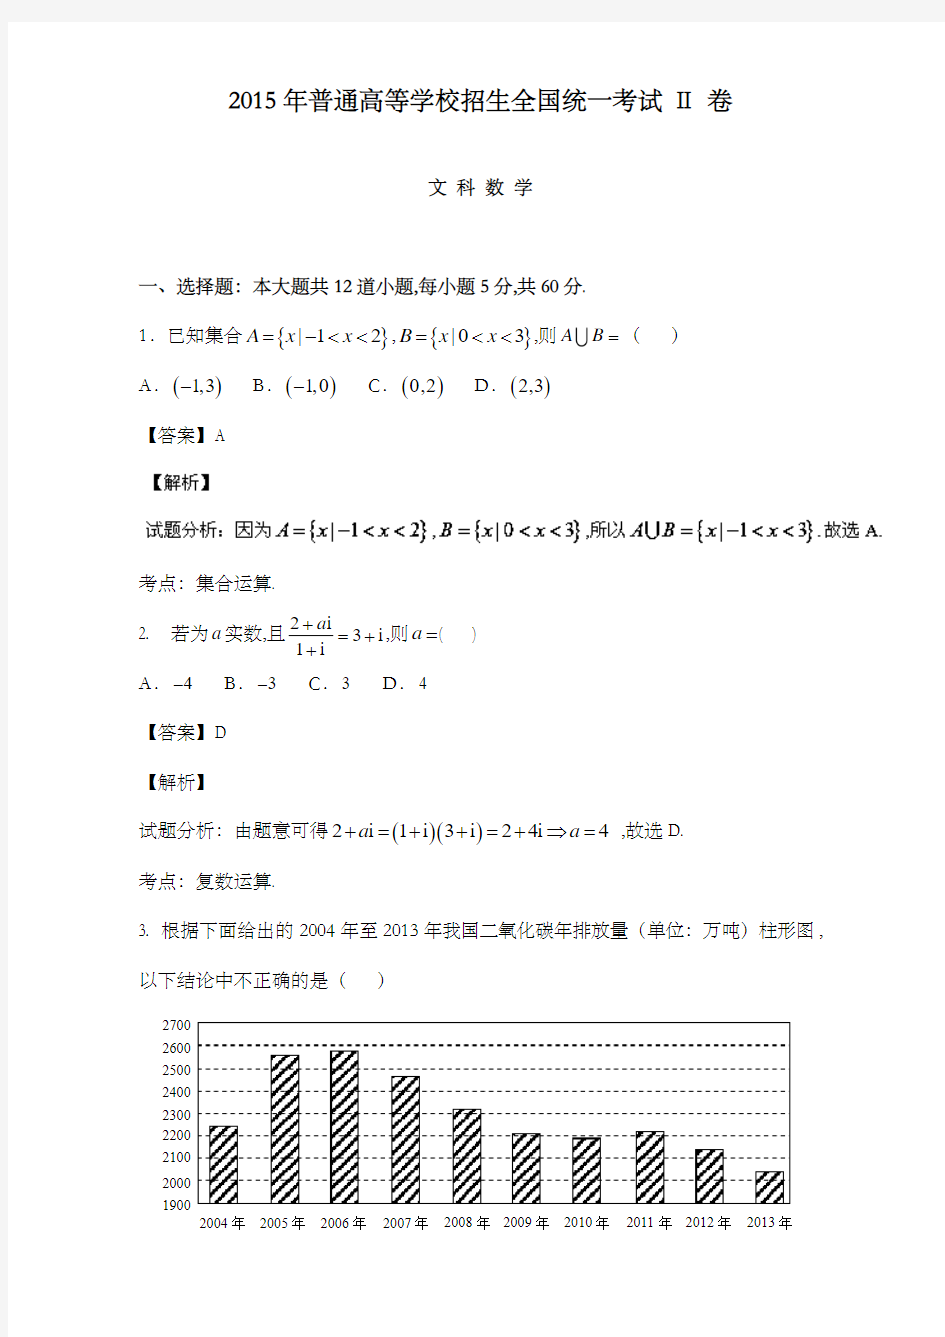 精编2015年高考真题文科高中数学新课标ii卷试卷和答案